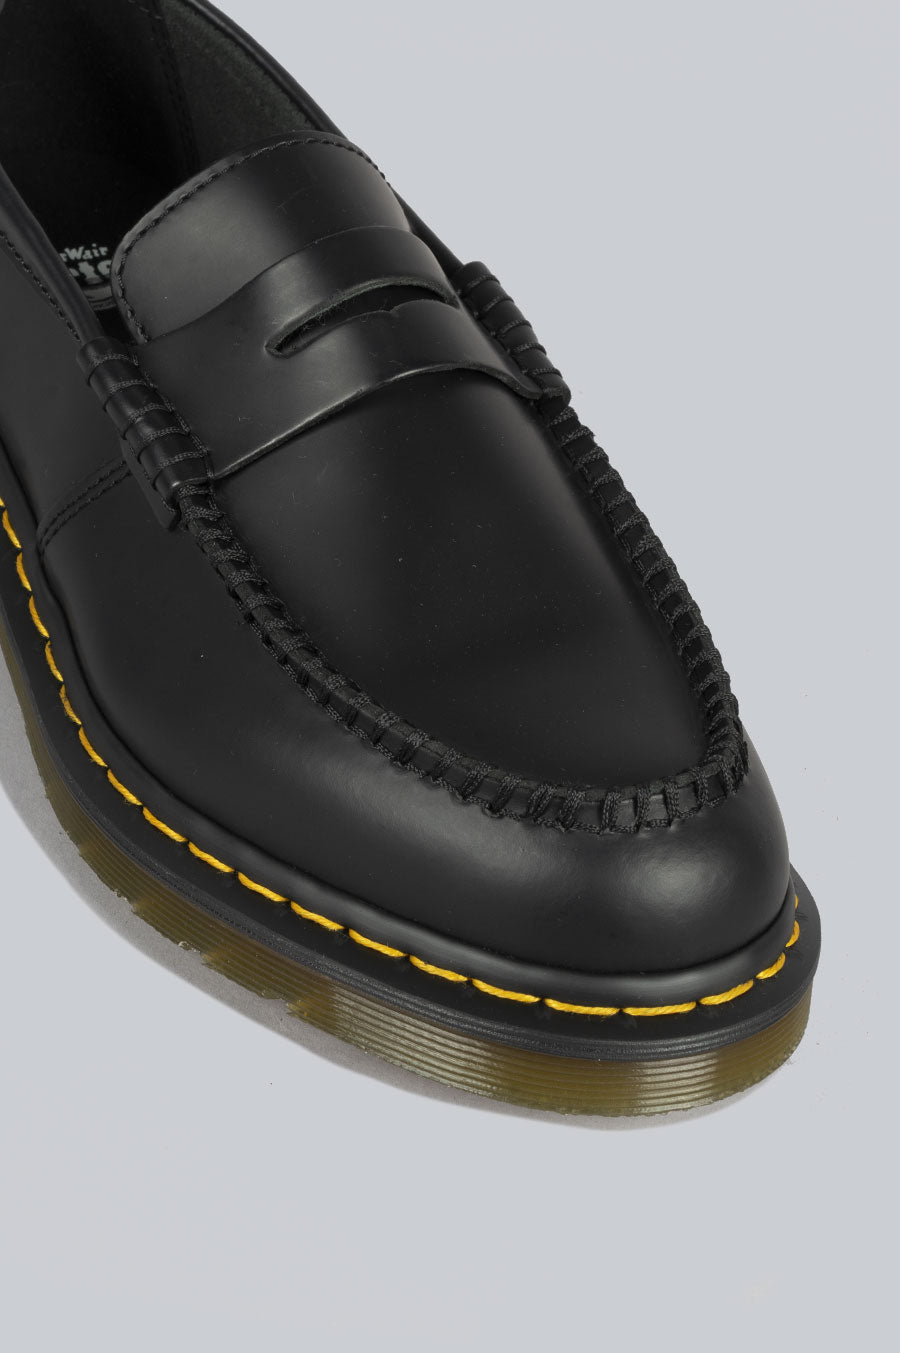 Dr. Martens 1461 Bex Leather Contrast Shoe Black With White | Karen Walker